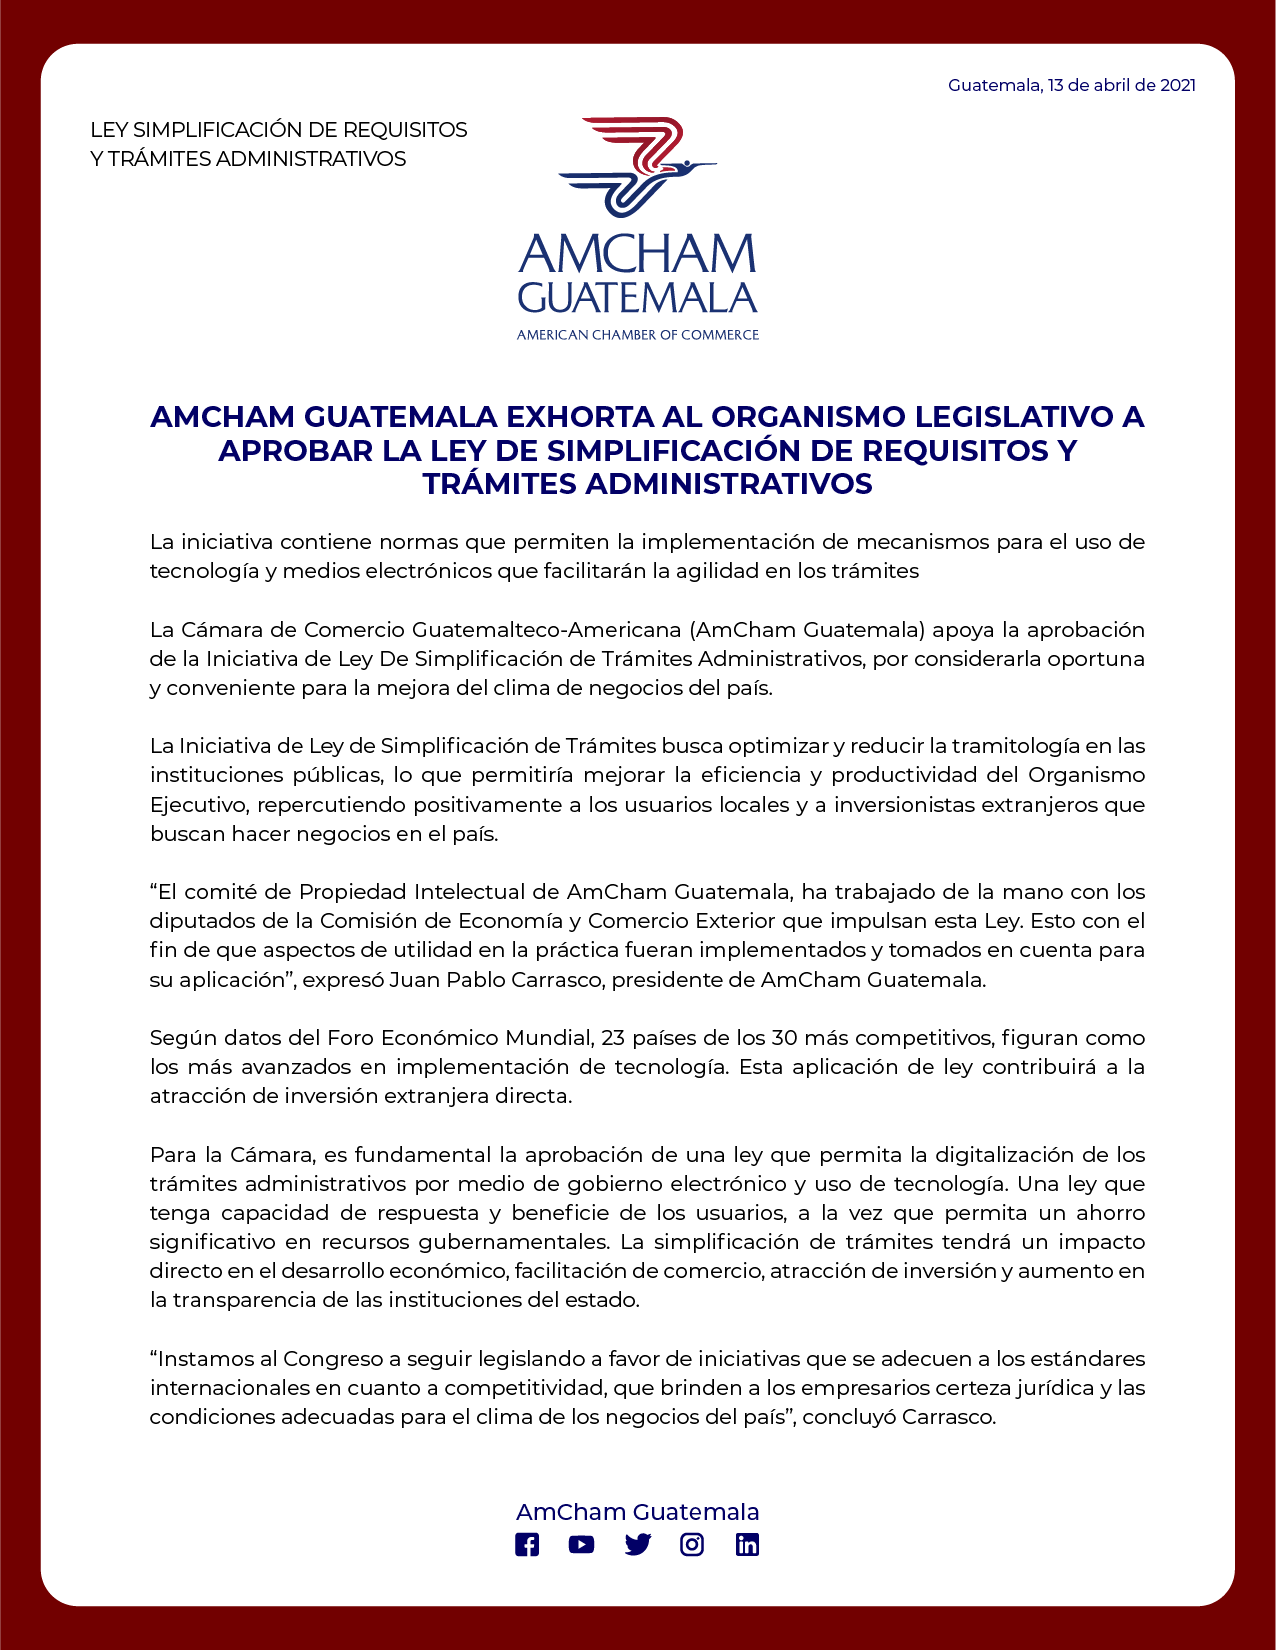 AmCham Organismo Legislativo aprobar Ley